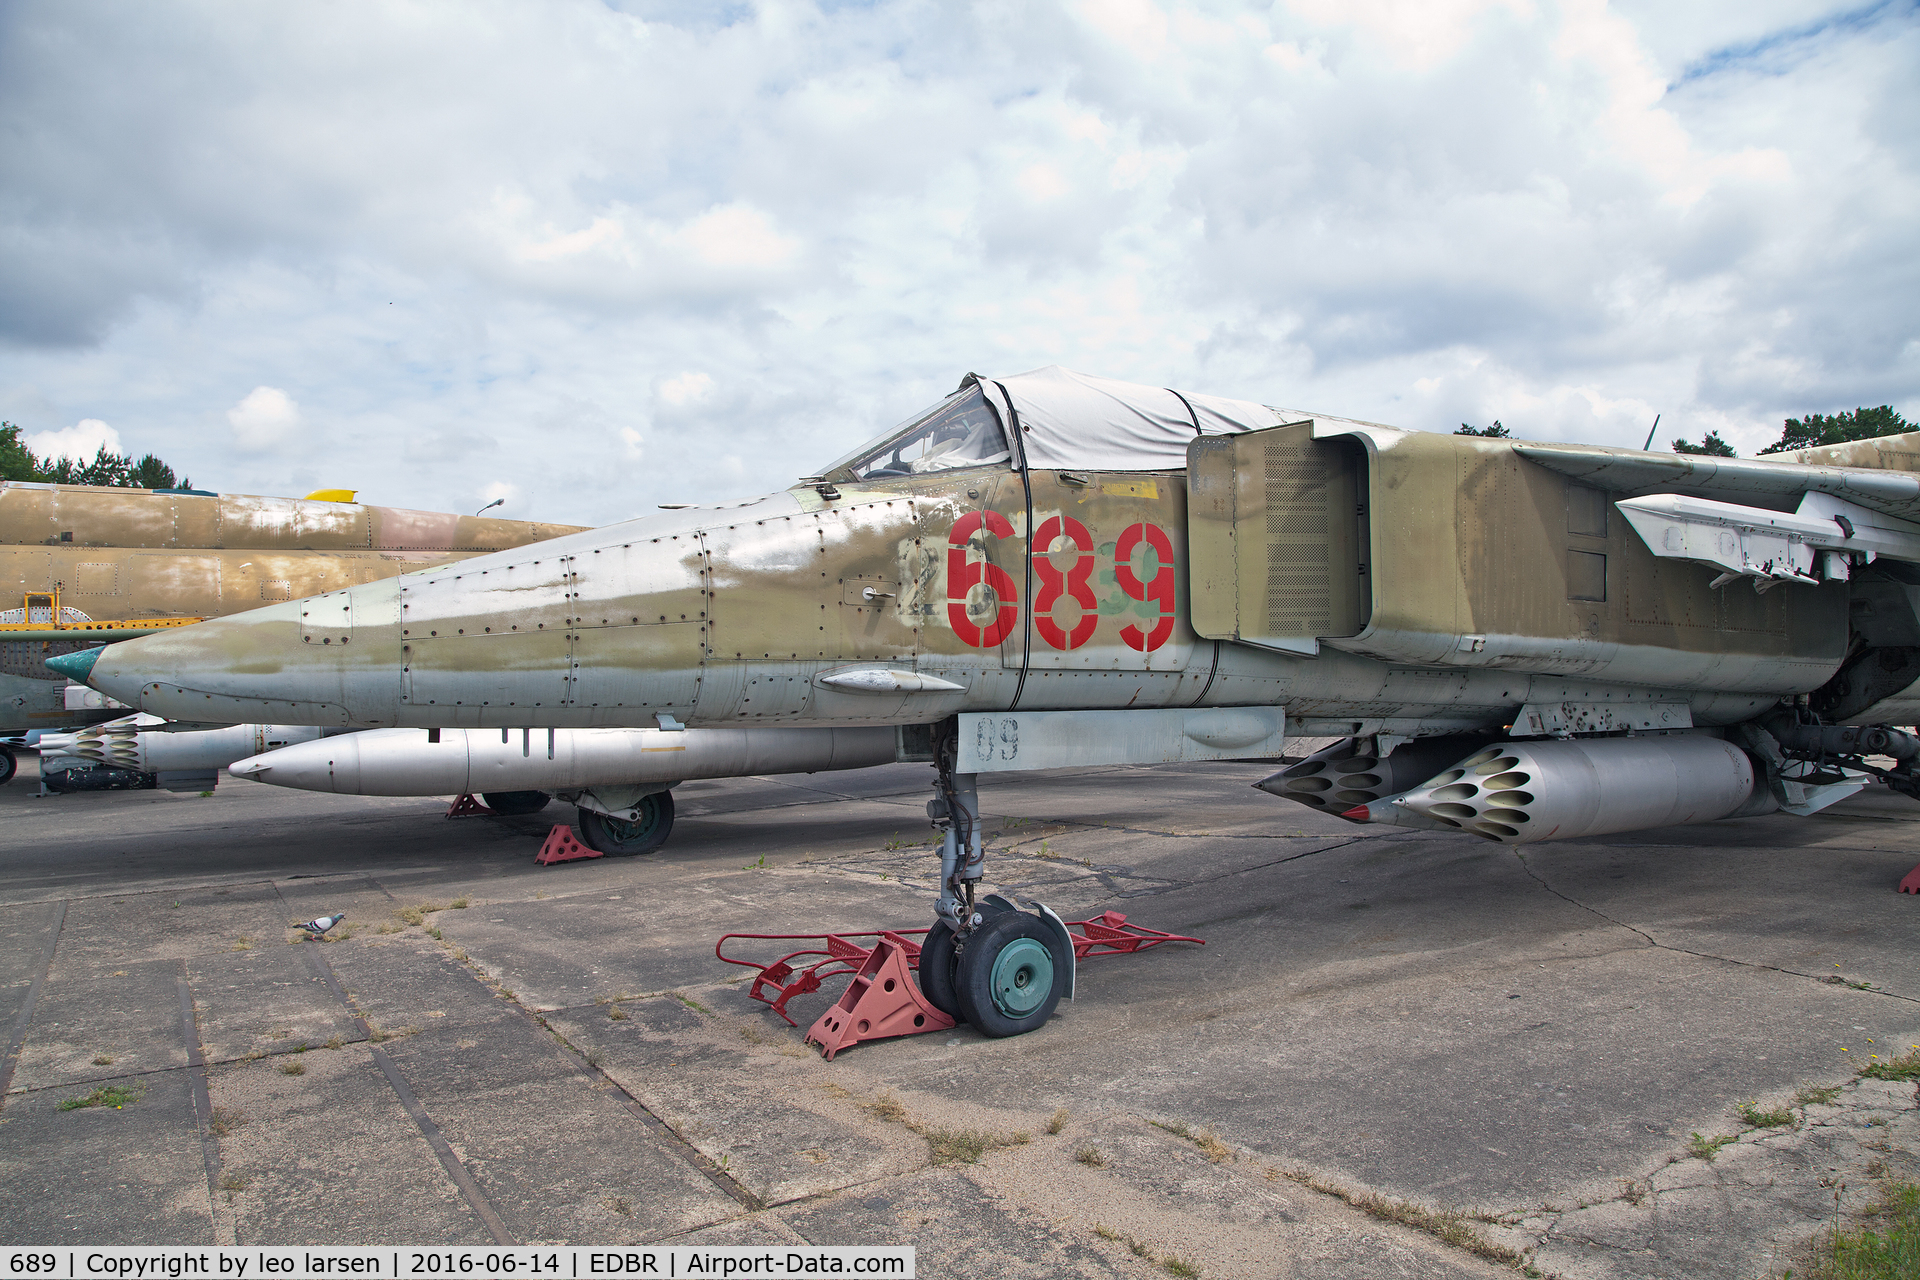 689, 1979 Mikoyan-Gurevich MiG-23BN C/N 0393211085, Rothenburg 14.6.2016